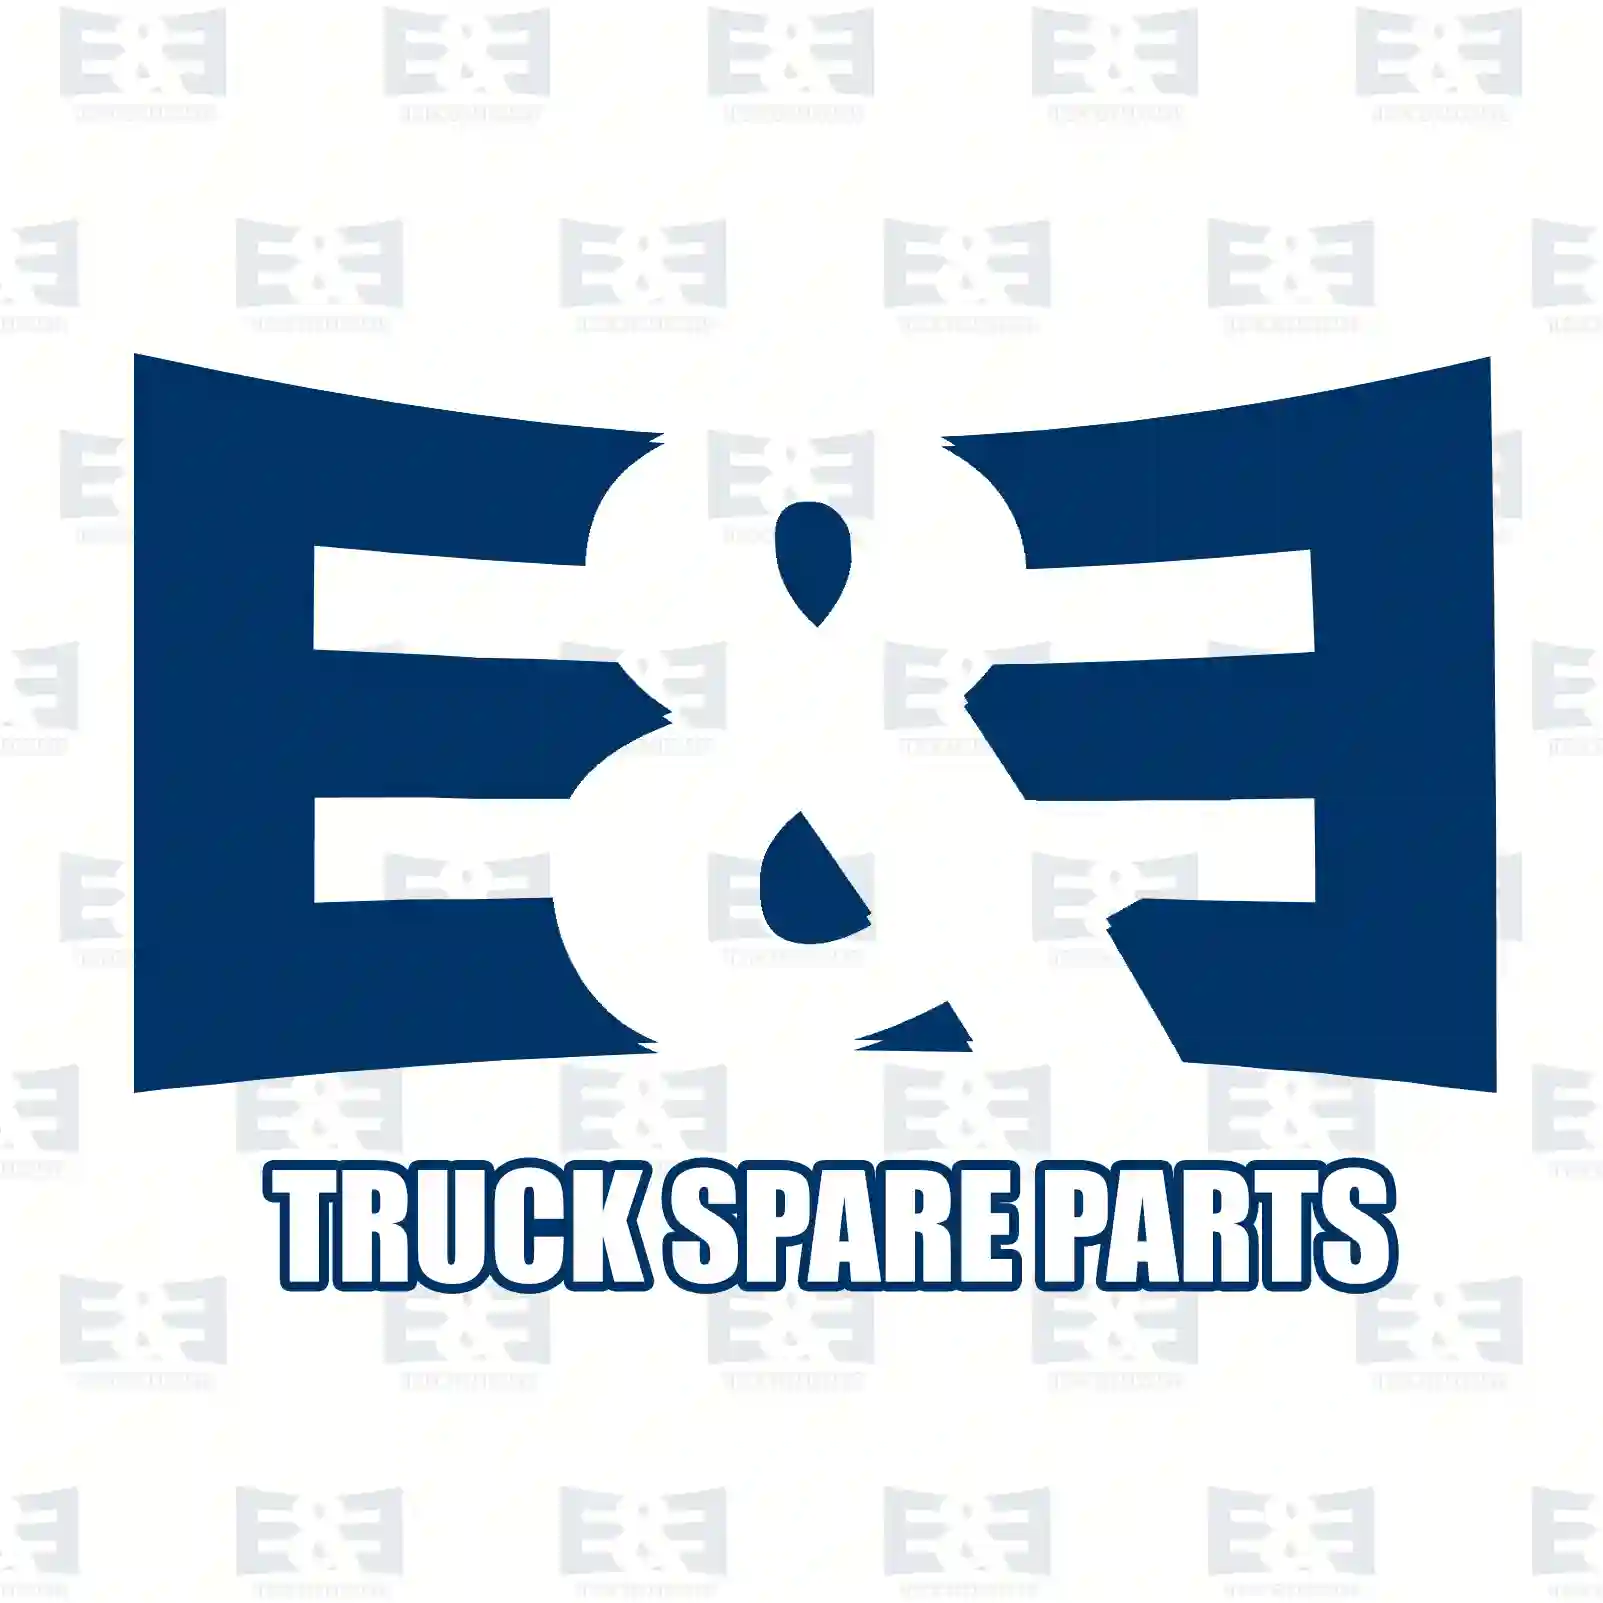 Brake disc, 2E2297144, 21225115, 21227349, 22227349, MBR9018, , , , , , ||  2E2297144 E&E Truck Spare Parts | Truck Spare Parts, Auotomotive Spare Parts Brake disc, 2E2297144, 21225115, 21227349, 22227349, MBR9018, , , , , , ||  2E2297144 E&E Truck Spare Parts | Truck Spare Parts, Auotomotive Spare Parts